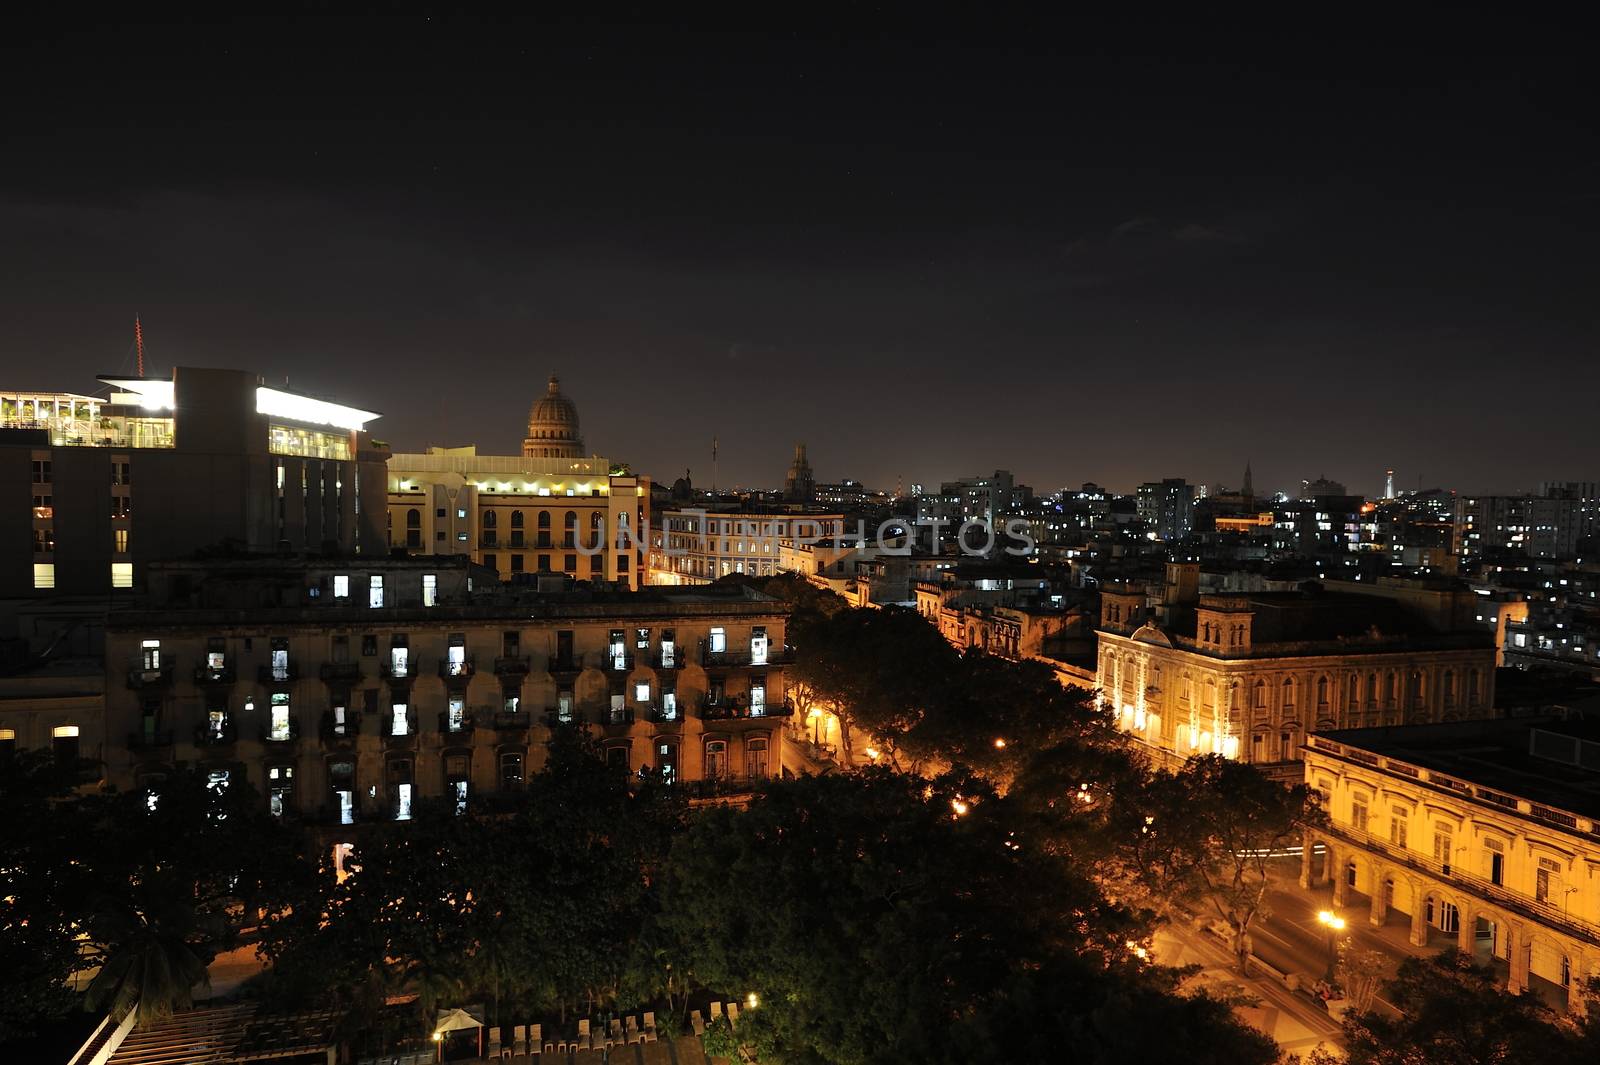 Havana at night by kertis